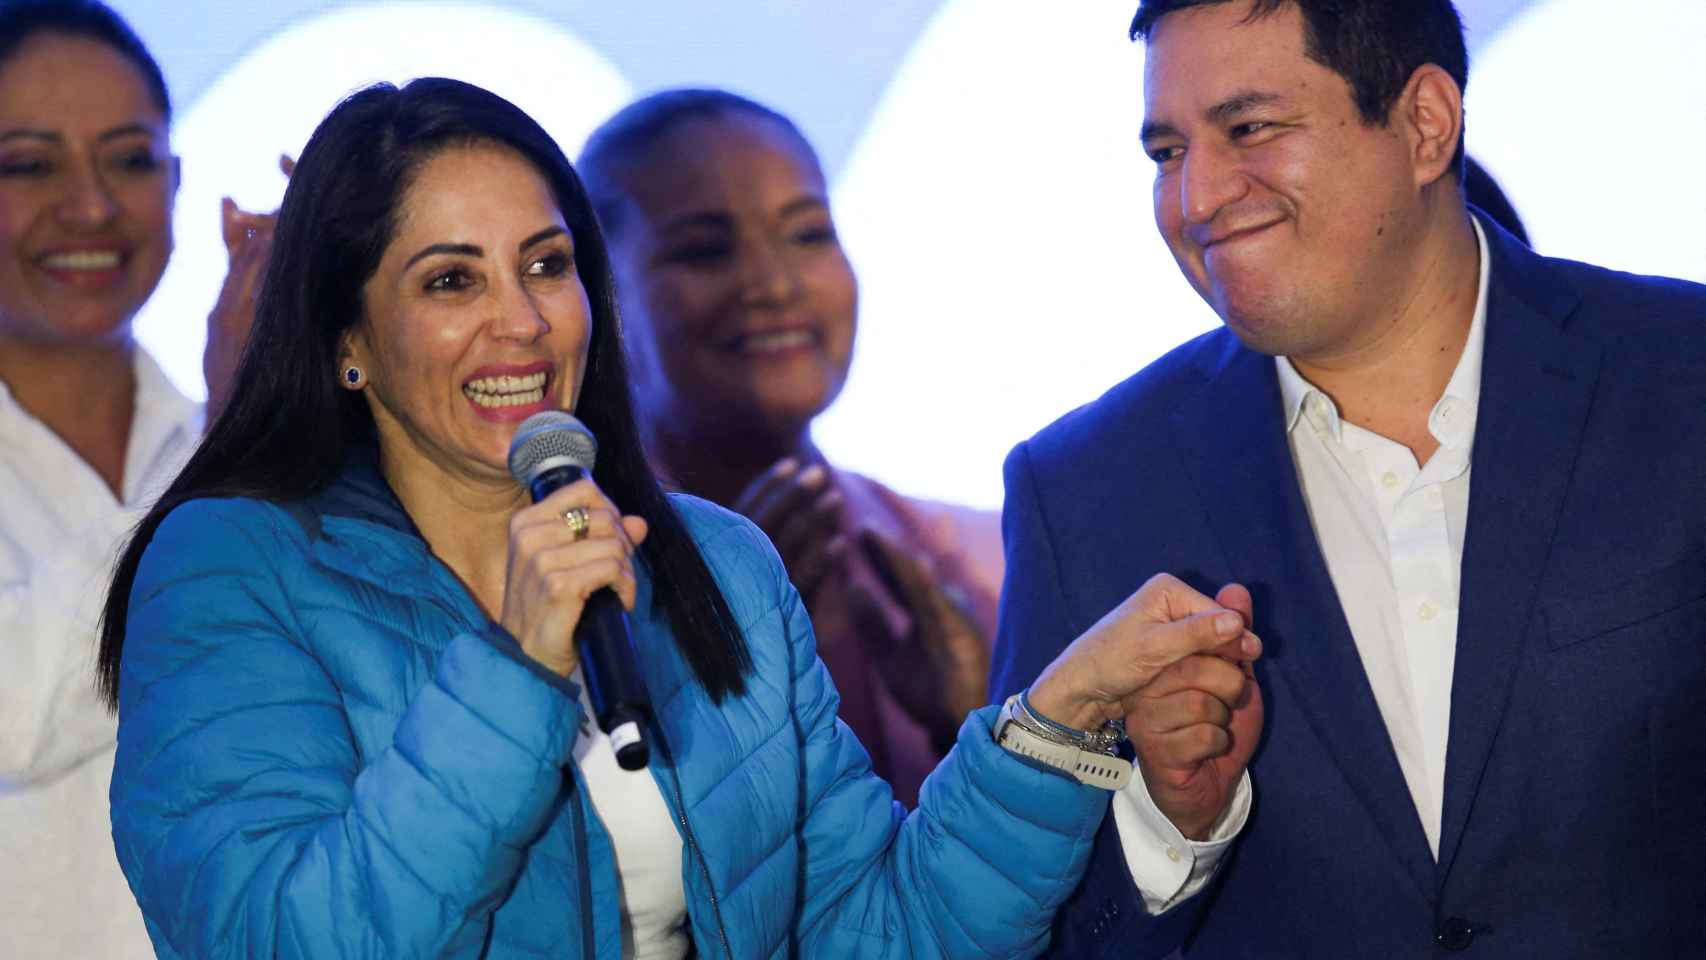 La candidata correísta, Luisa González, tras perder las elecciones.